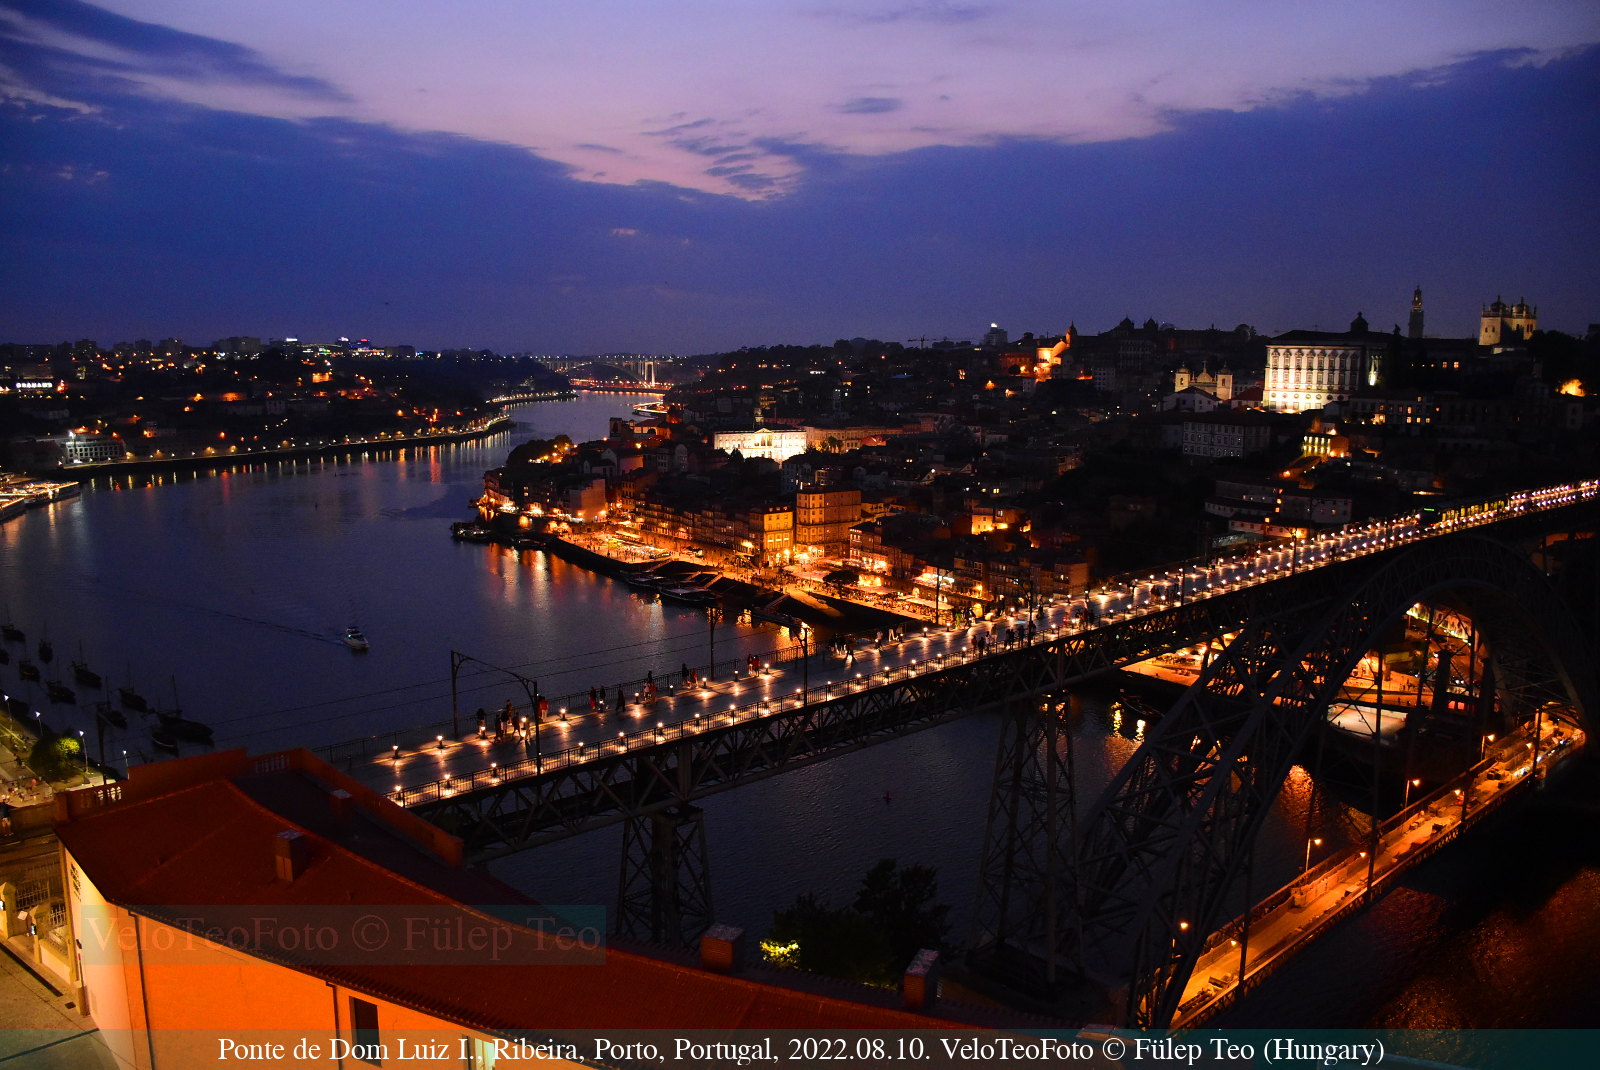 Porto legszebb látképe: Ribeira negyed, Douro folyó és a Ponte Luiz I. híd.